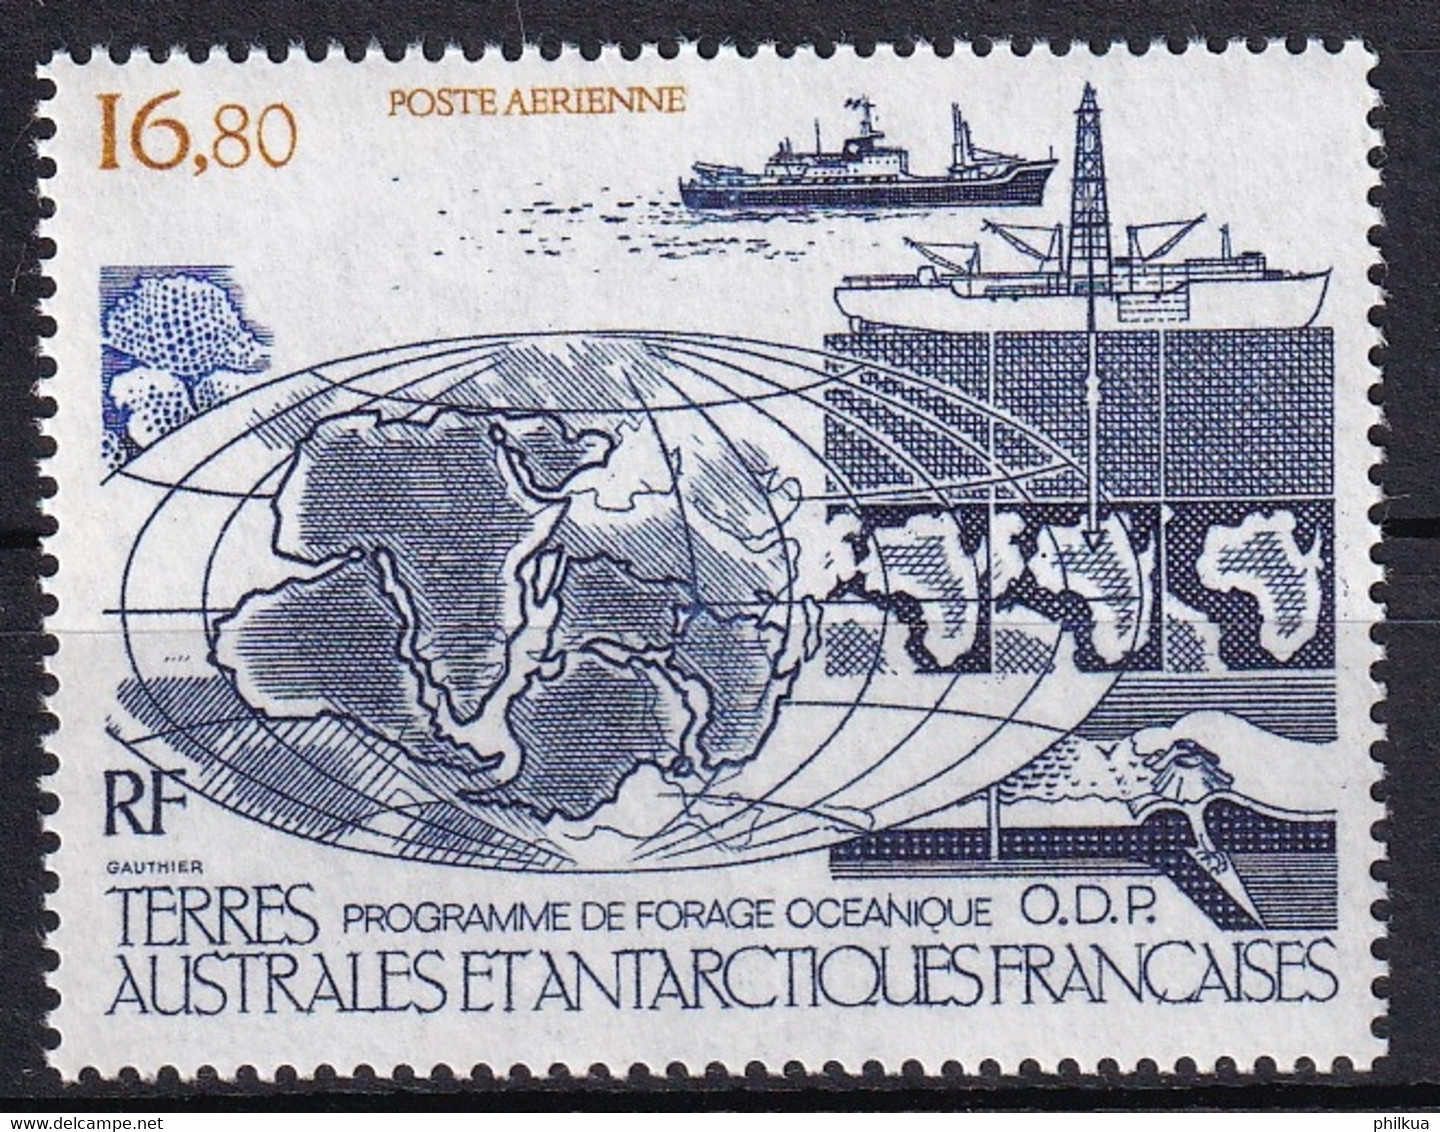 MiNr. 229 Franz. Geb. I. D. Antarktis1987, 1. Jan. Ozeanisches Erdöl-Bohrprogramm (ODP) - Postfrisch/**/MNH - Maritime